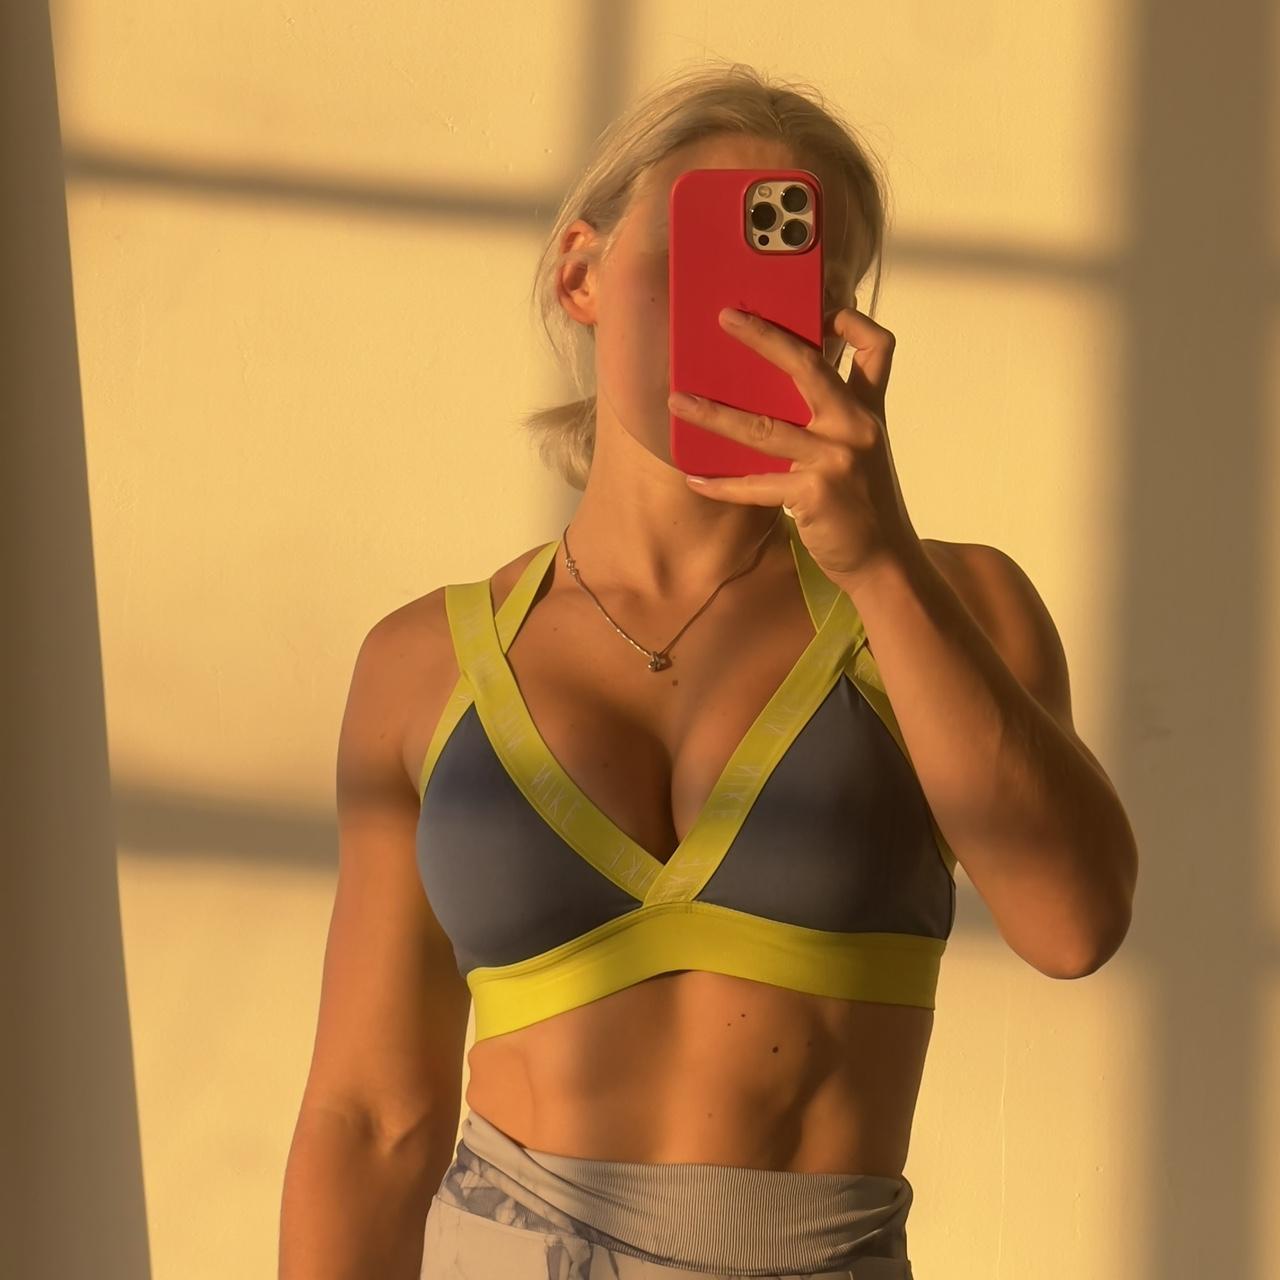 Nike women's sports bra (Size XL) 💛💛NO PAYPAL💛💛 - Depop